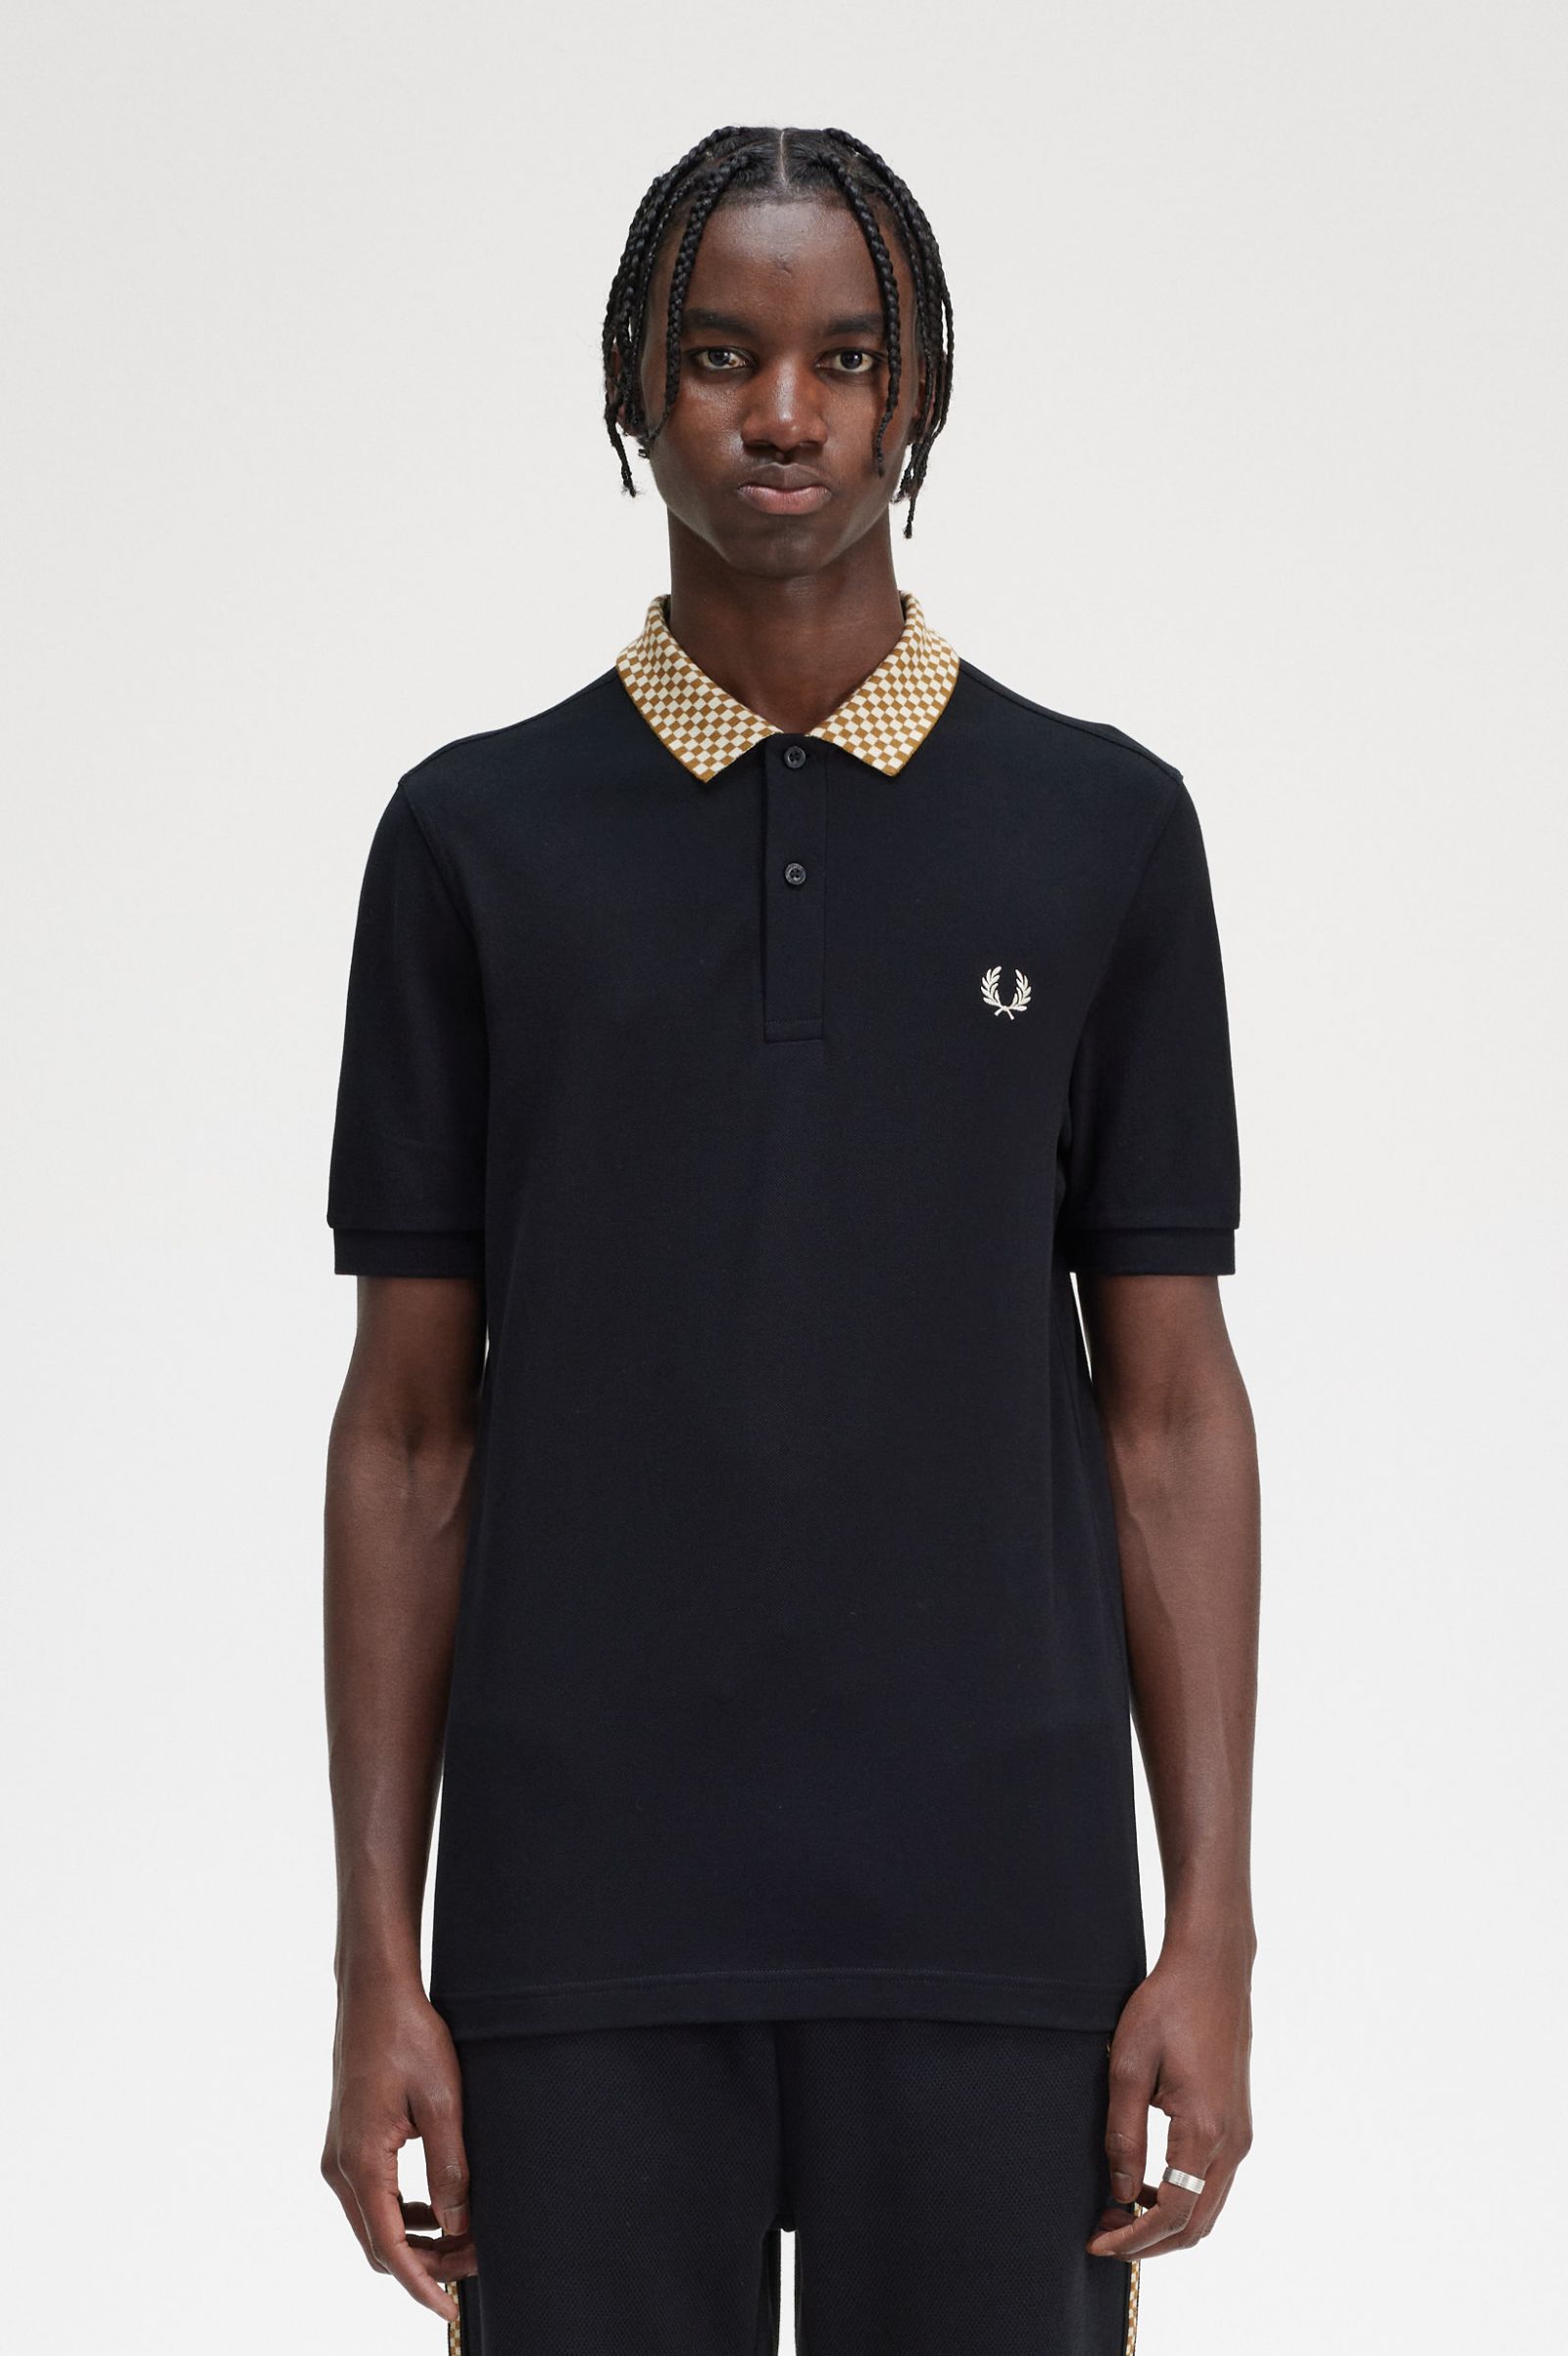 Chequerboard Collar Polo Shirt - Black | Men's Polo Shirts | Short ...